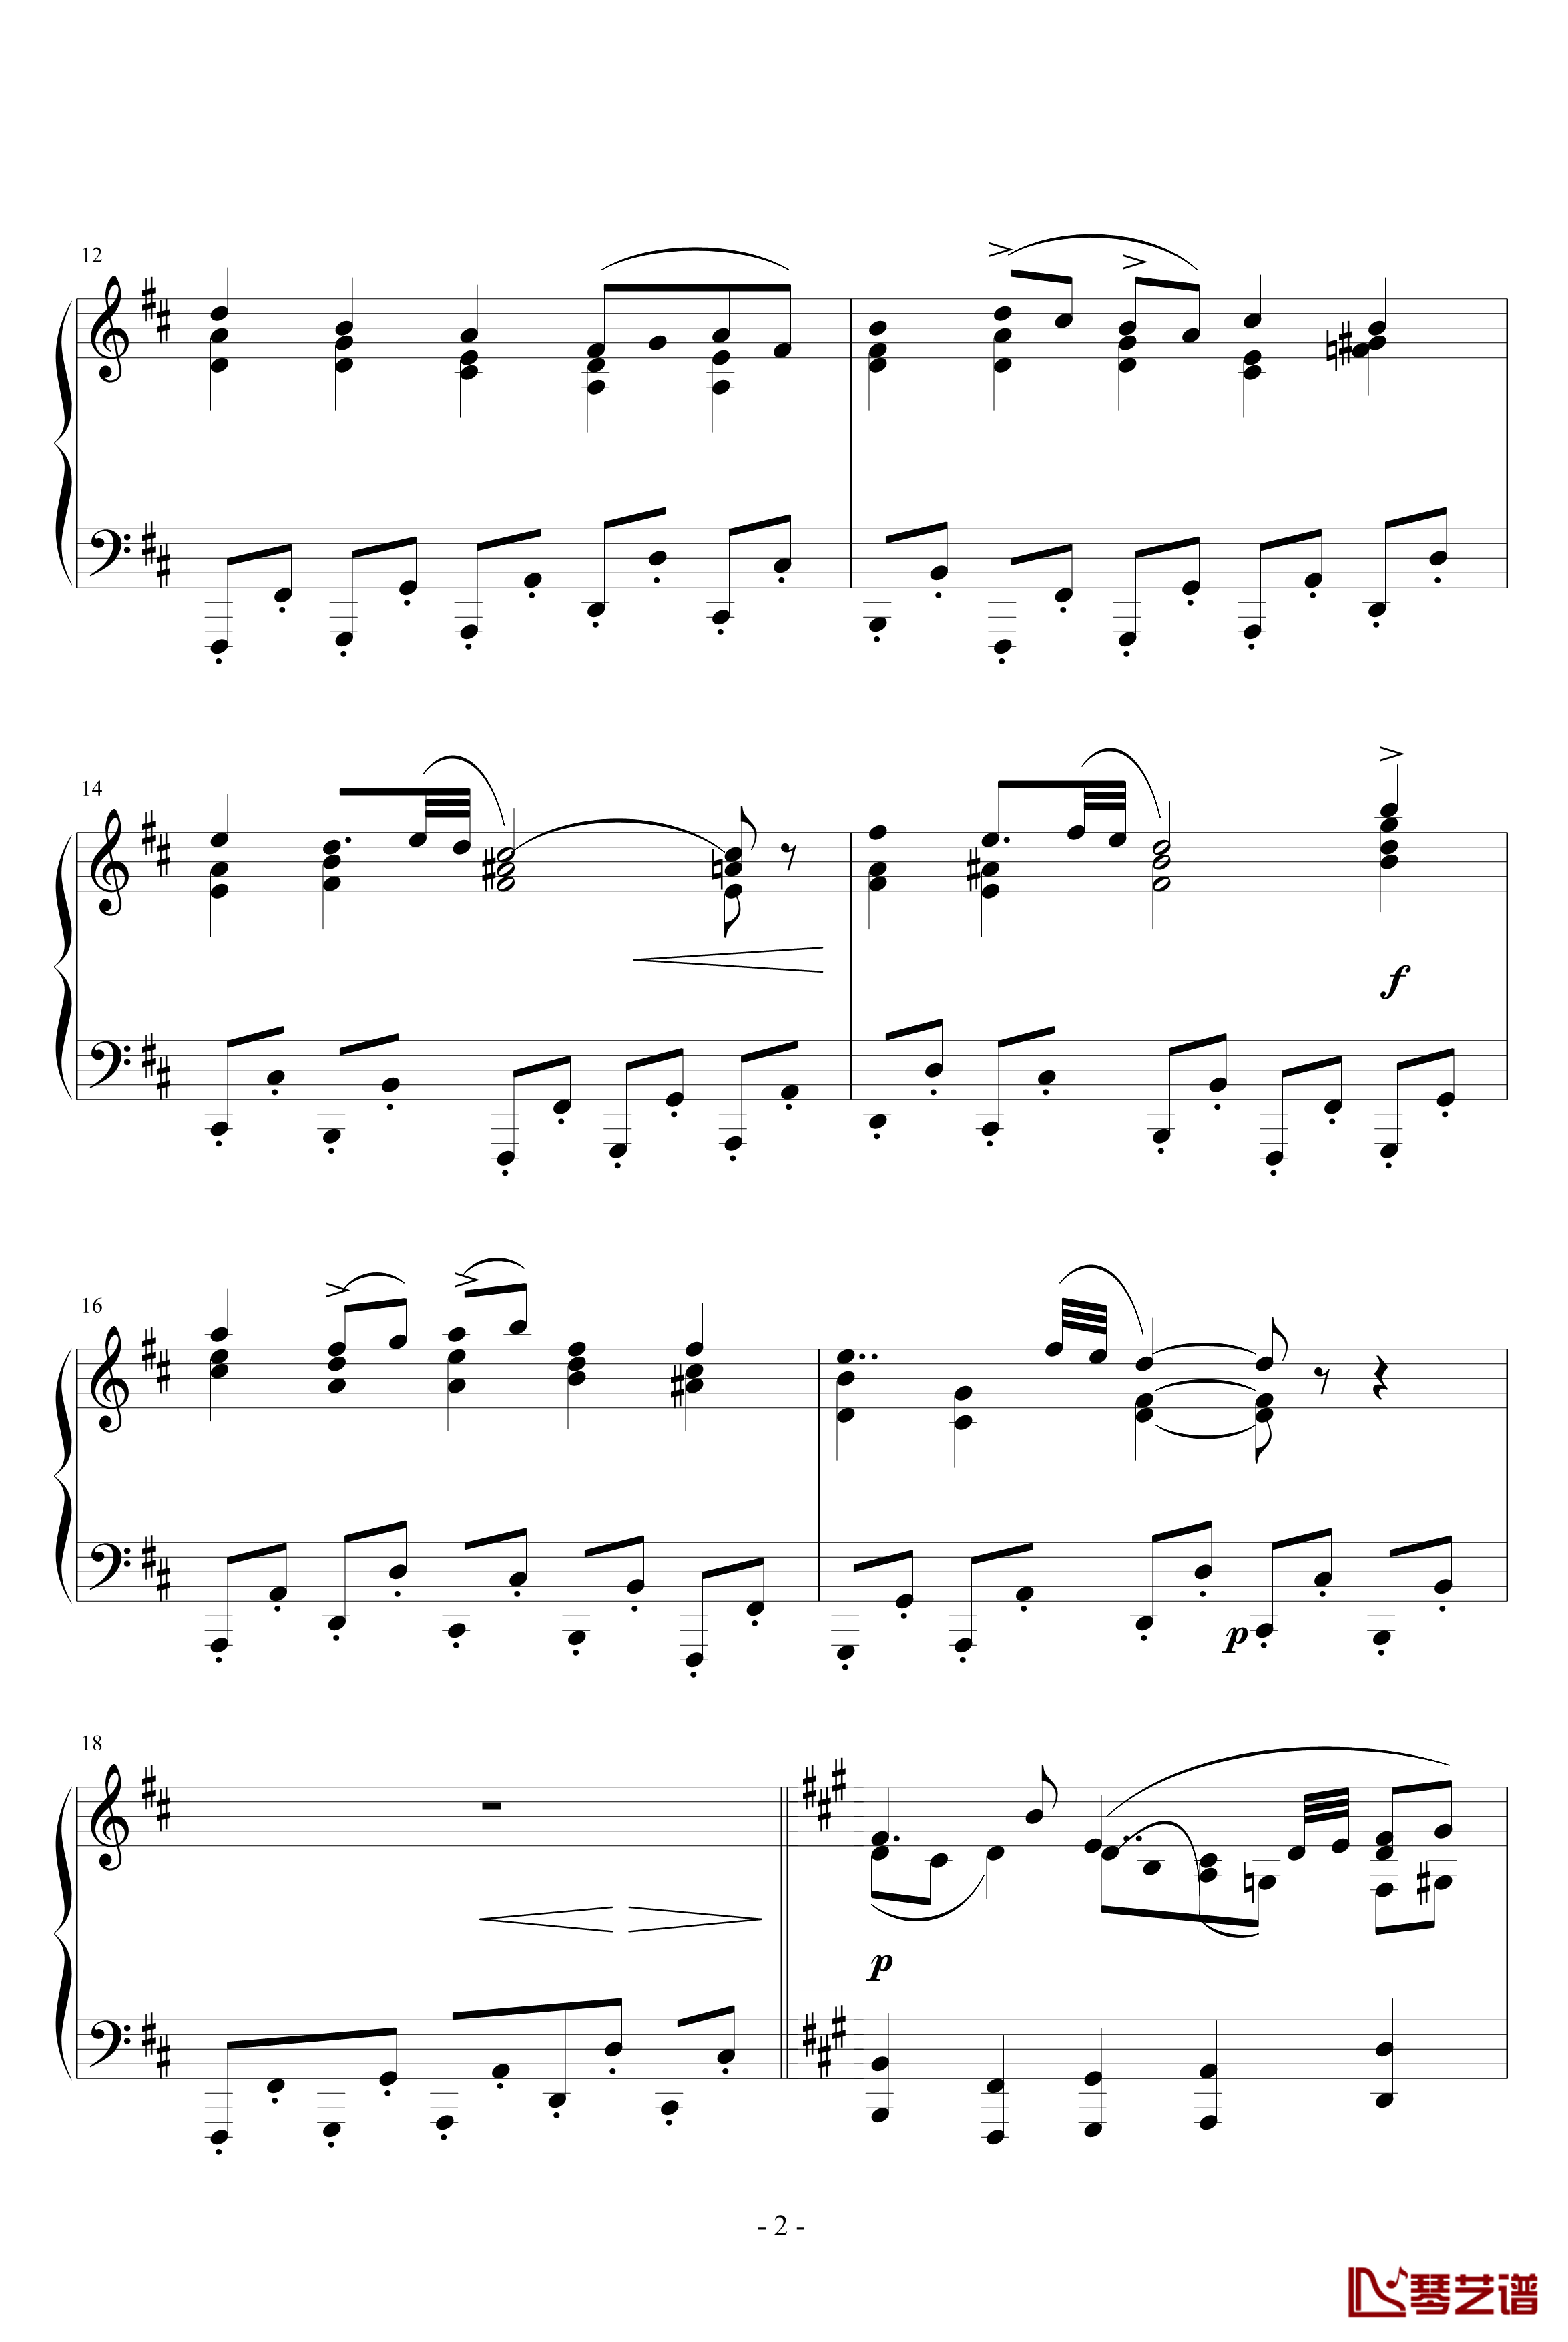 固定低音钢琴谱-阿连斯基2